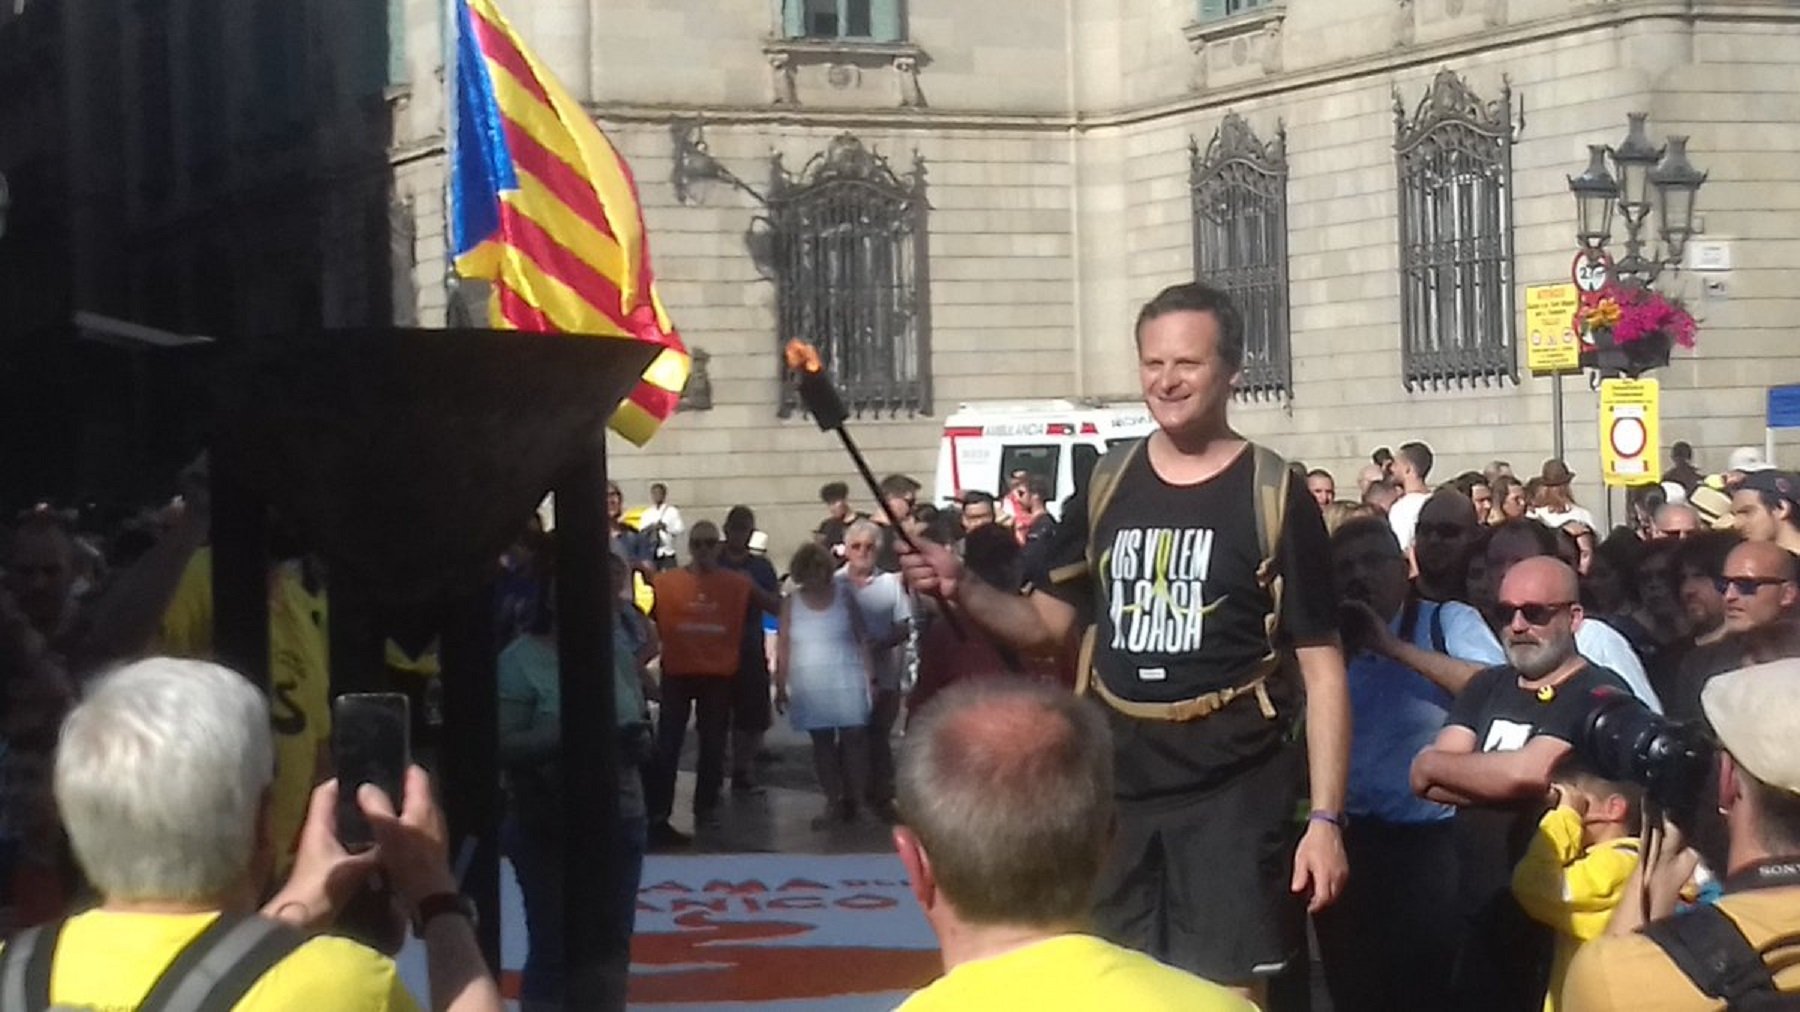 Crits de 'llibertat' a l'arribada de la Flama del Canigó a la plaça Sant Jaume